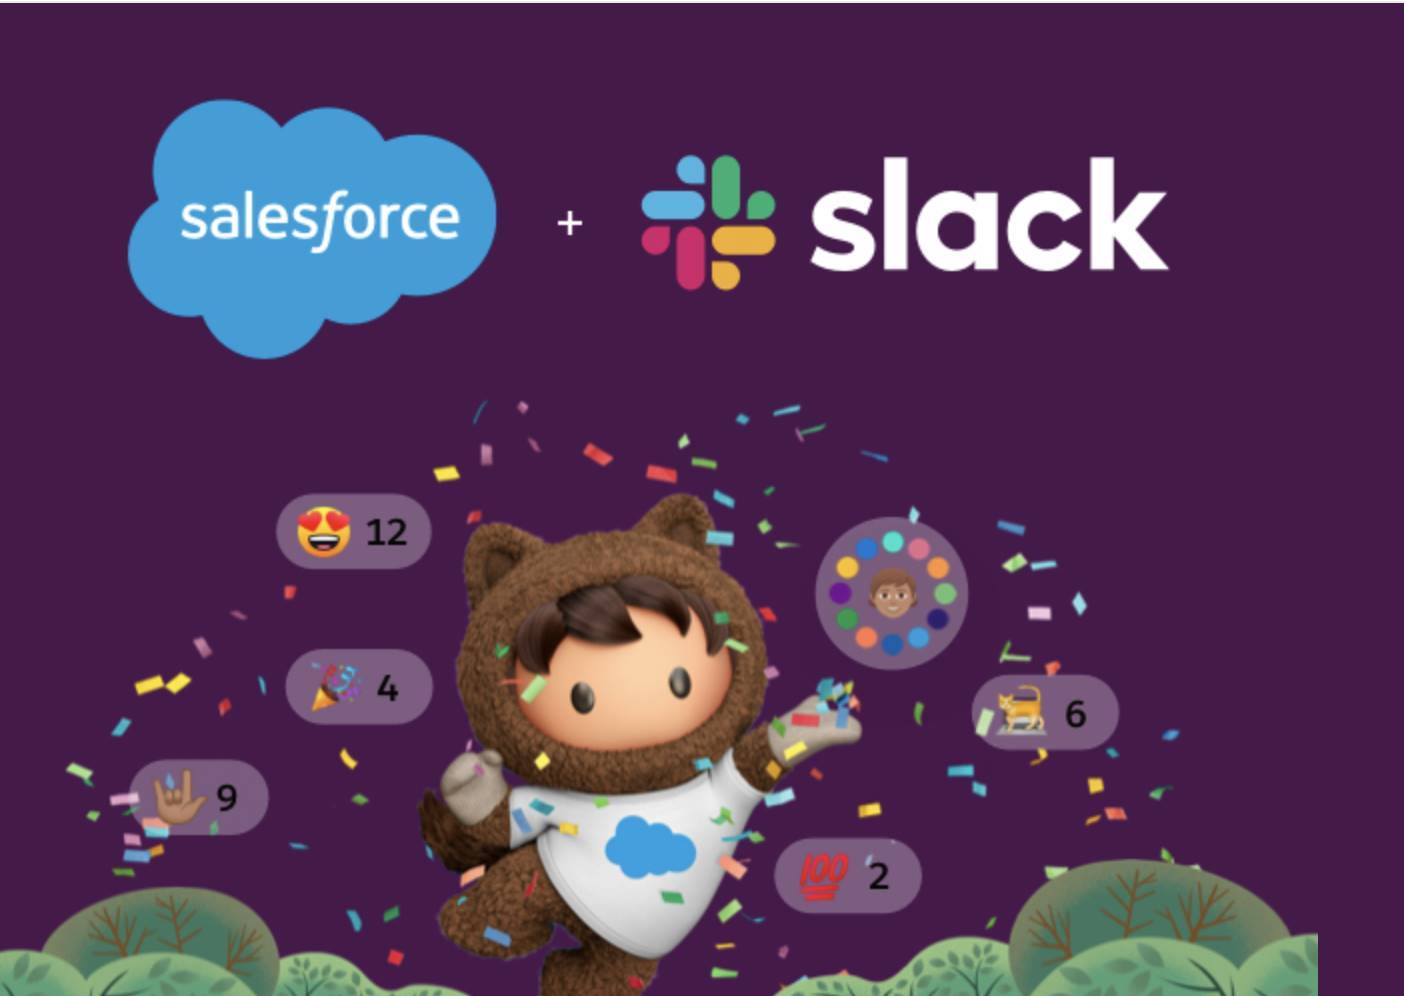 salesforce slack integration